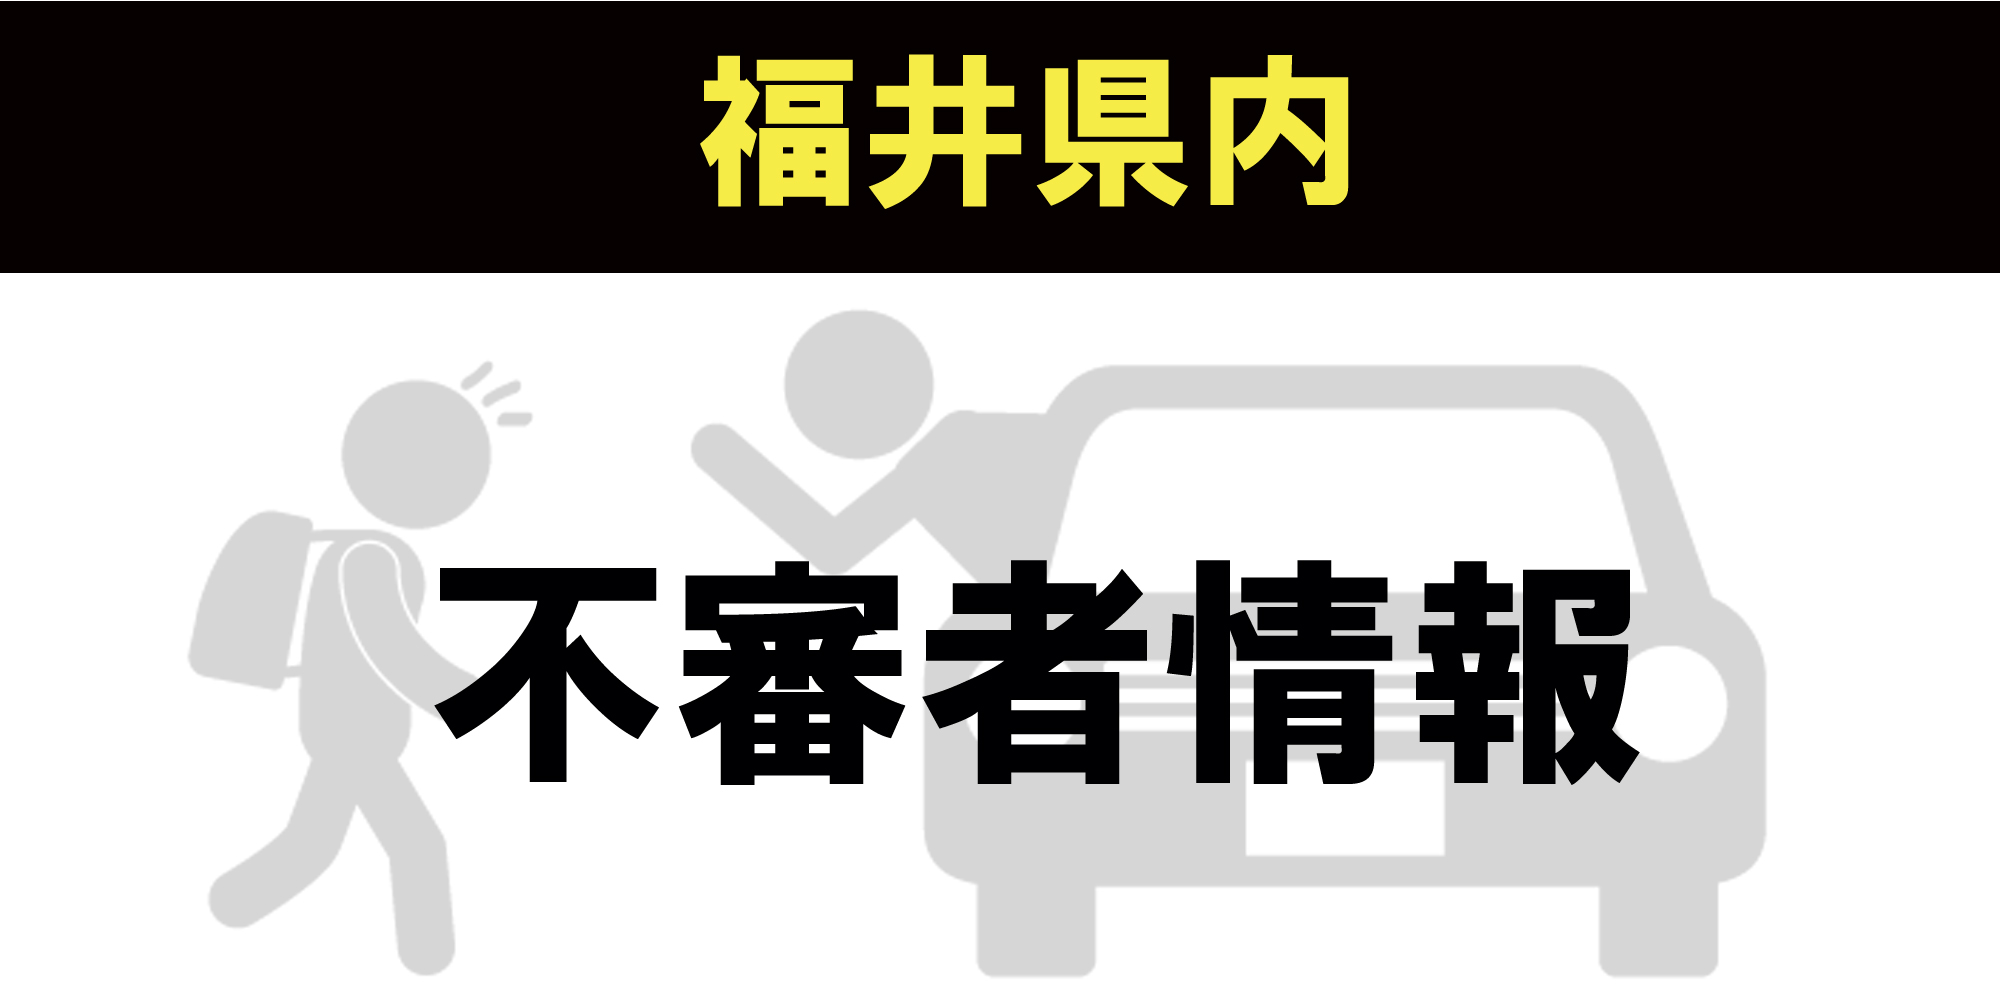 【痴漢情報】福井市 8月24日 下半身露出の男が路上で女性触る